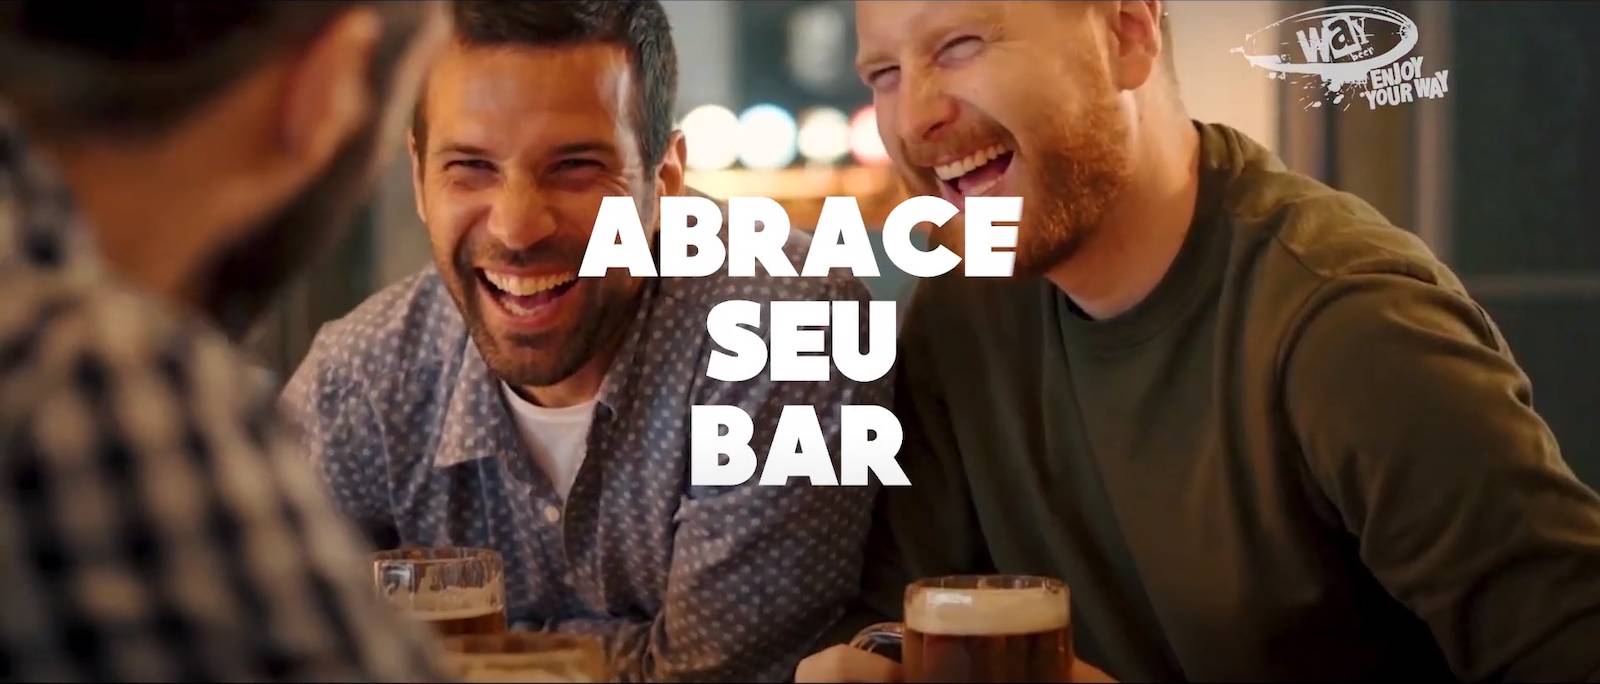 Cervejaria Way Beer lança campanha de apoio aos bares